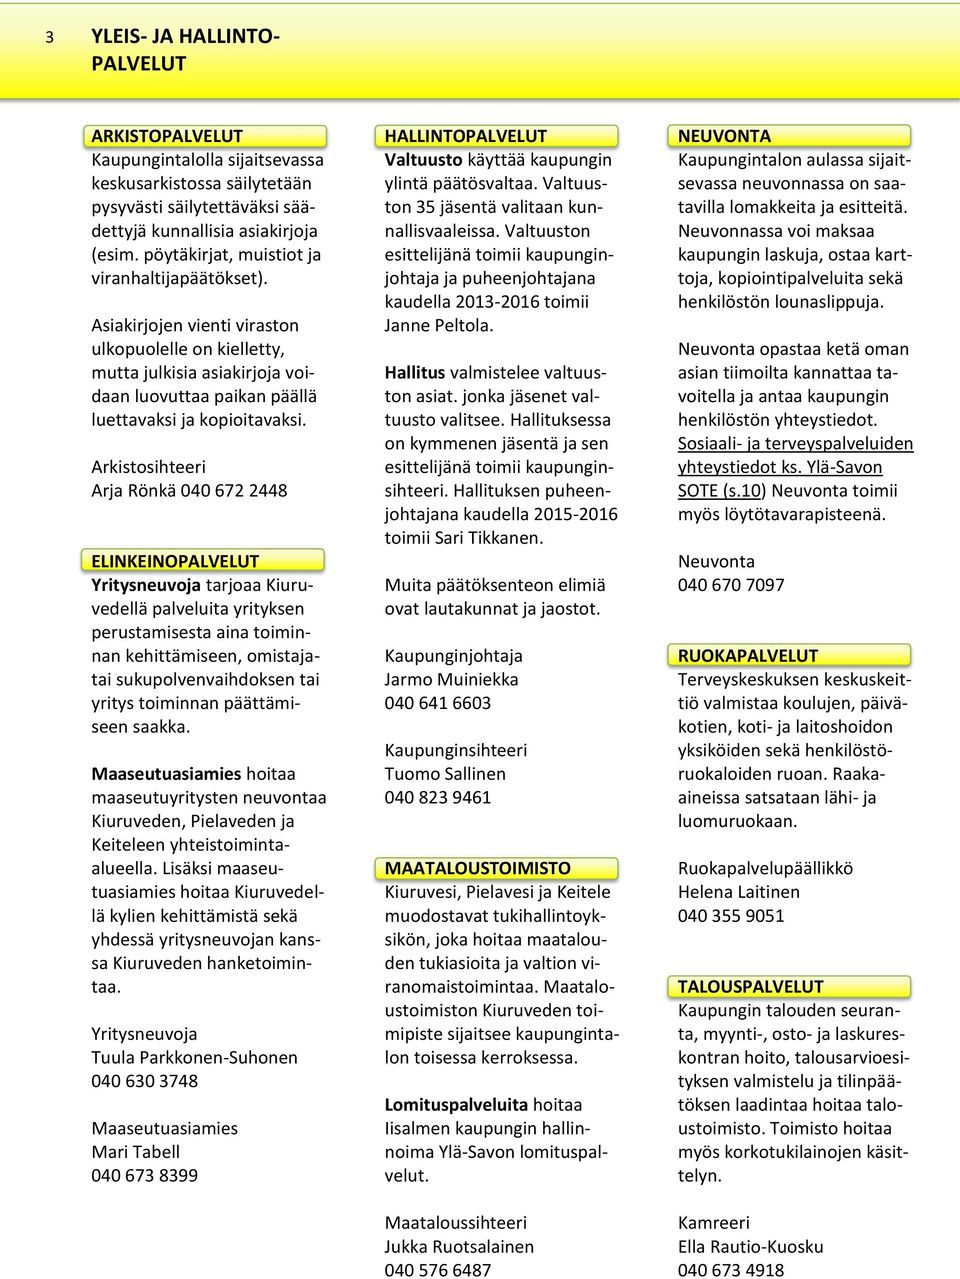 Arkistosihteeri Arja Rönkä 040 672 2448 ELINKEINOPALVELUT Yritysneuvoja tarjoaa Kiuruvedellä palveluita yrityksen perustamisesta aina toiminnan kehittämiseen, omistajatai sukupolvenvaihdoksen tai